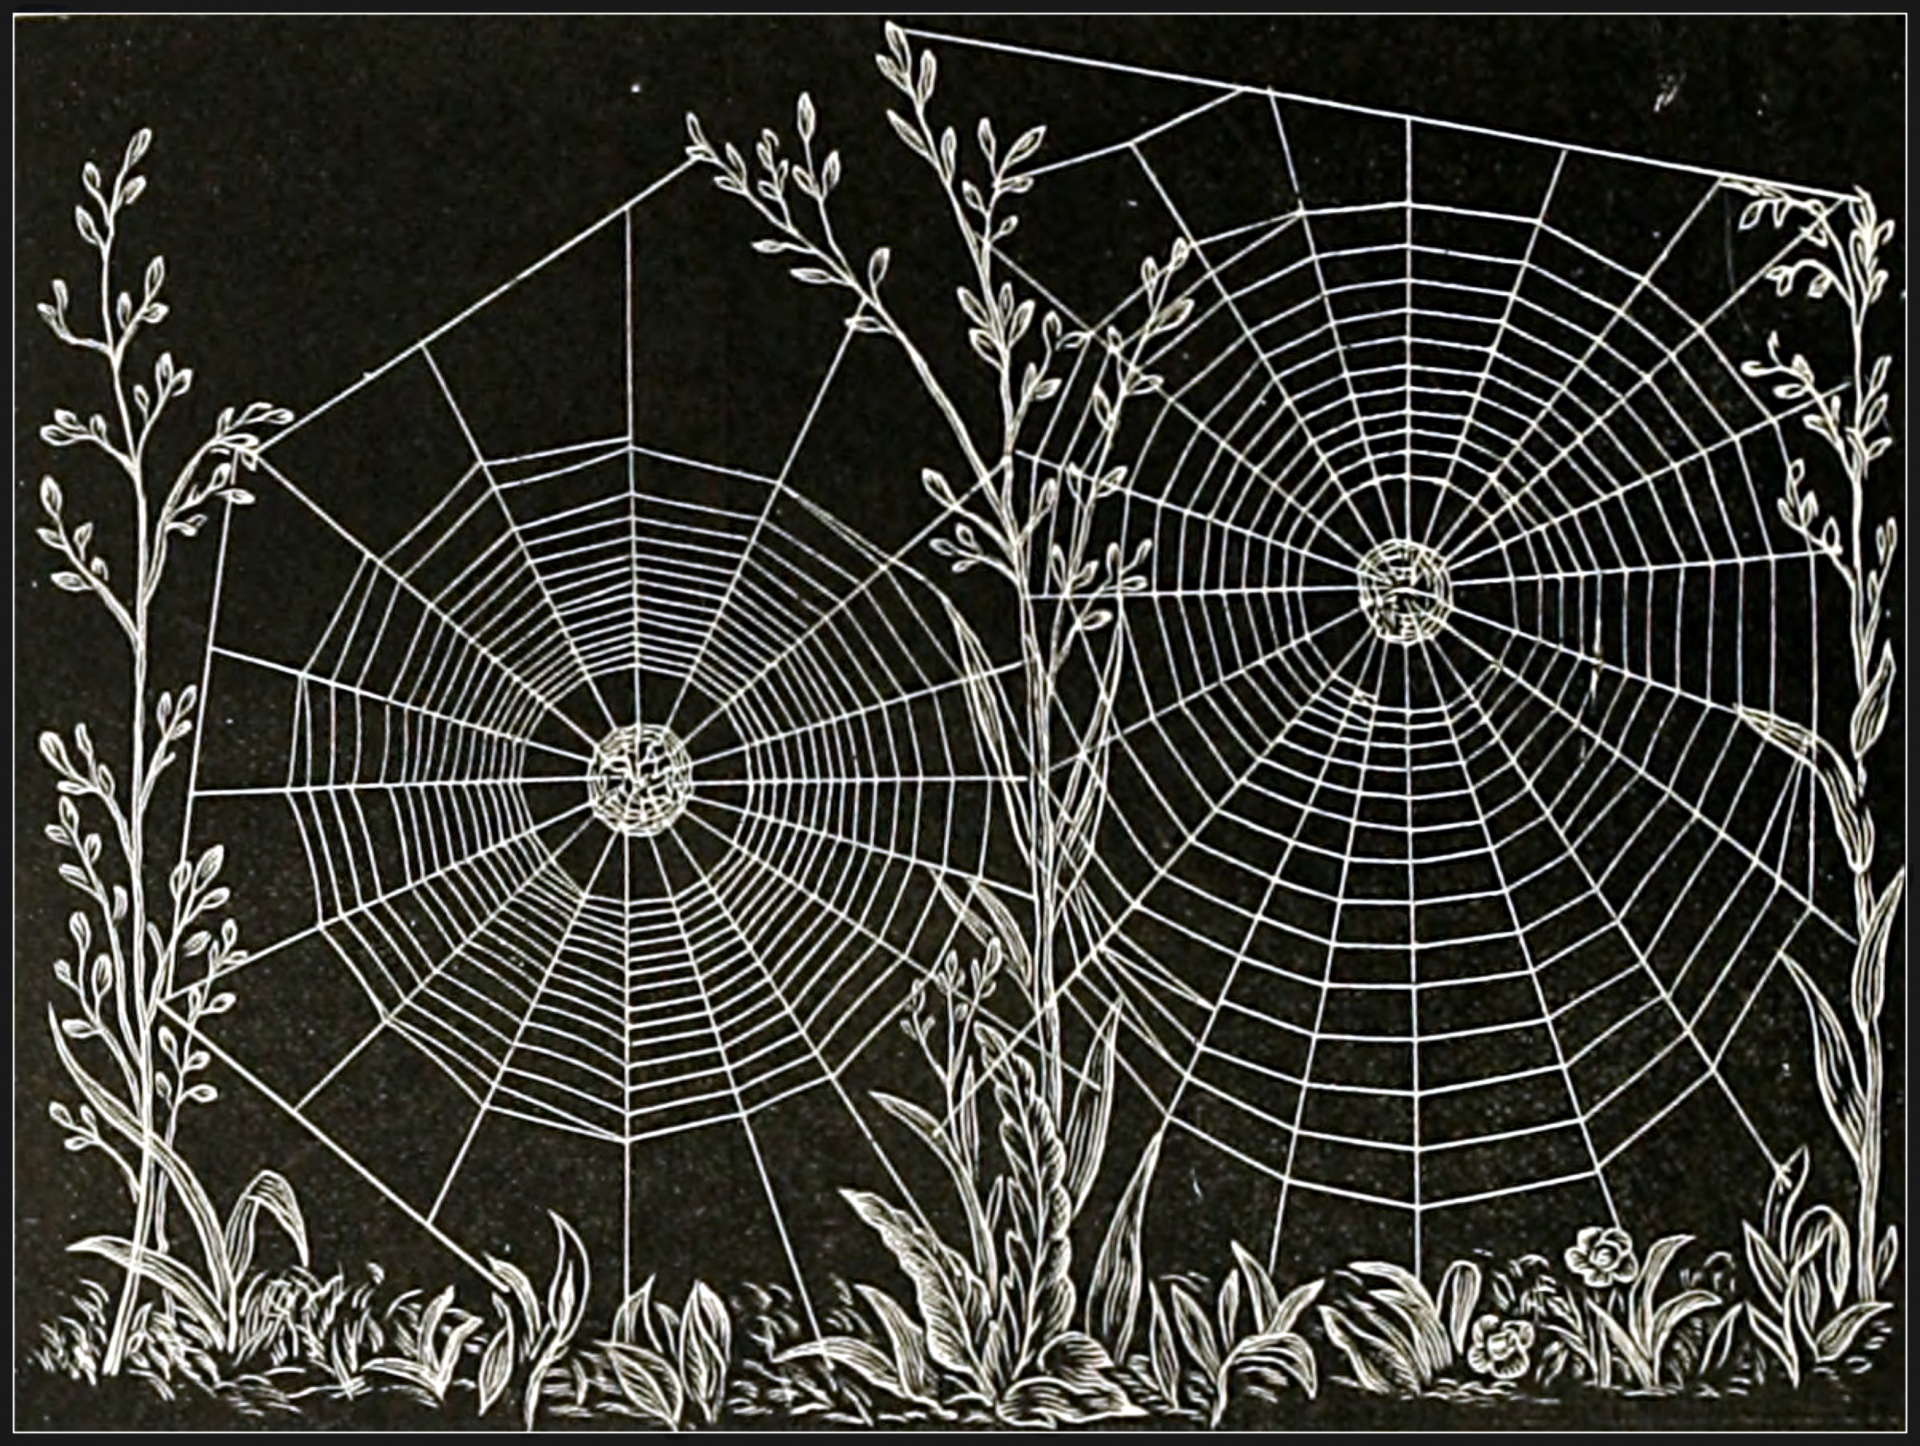 Halloween spider webs landscape night vintage clipart old antique illustration